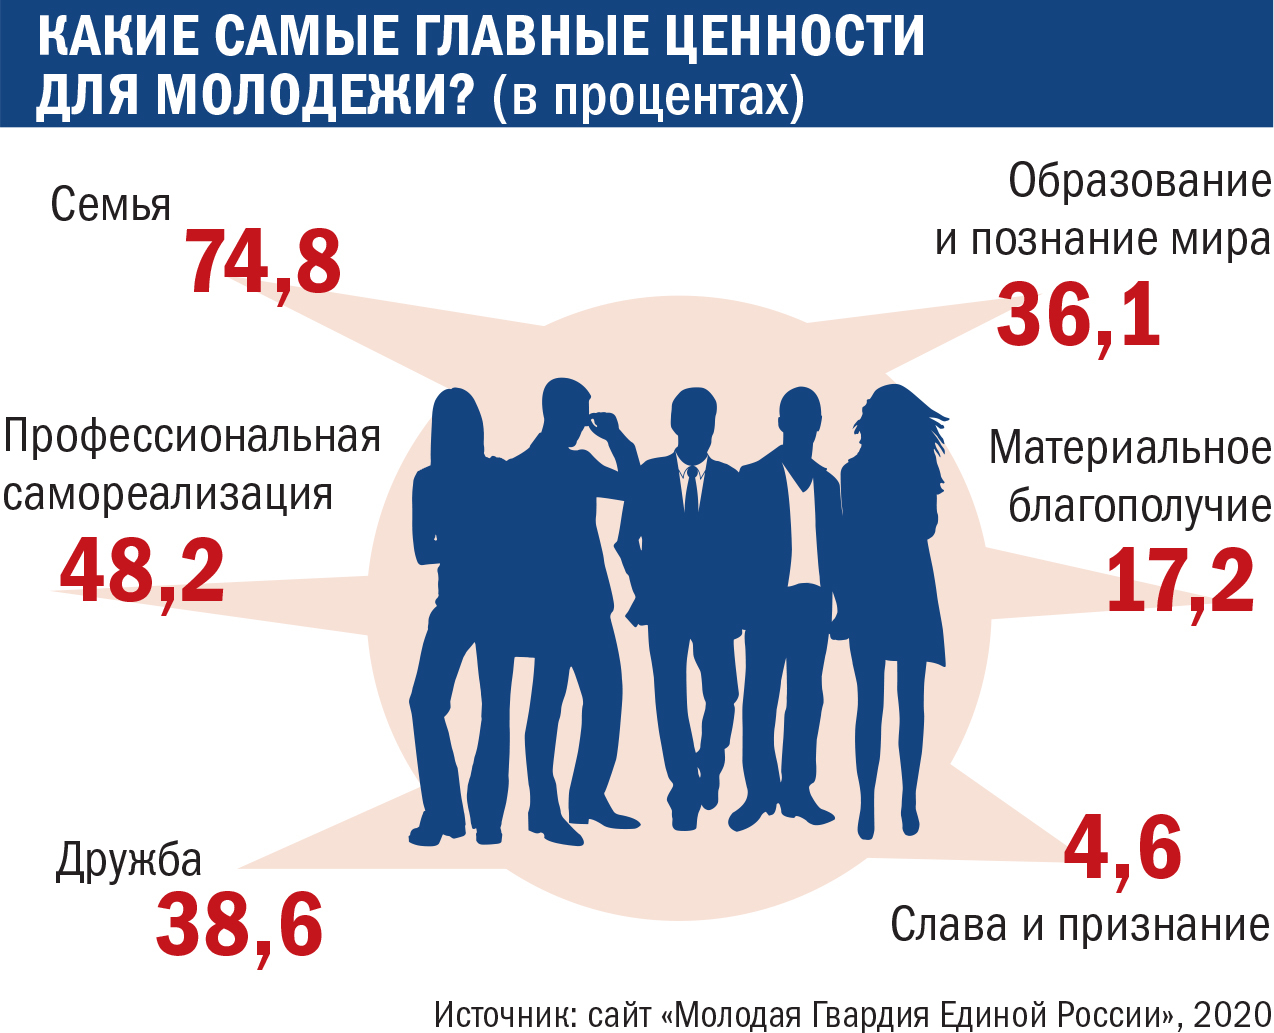 Насколько младше. Молодежь Возраст. Молодежь по возрастам. Возраст молодежи в РФ. Возрастные границы молодежи.